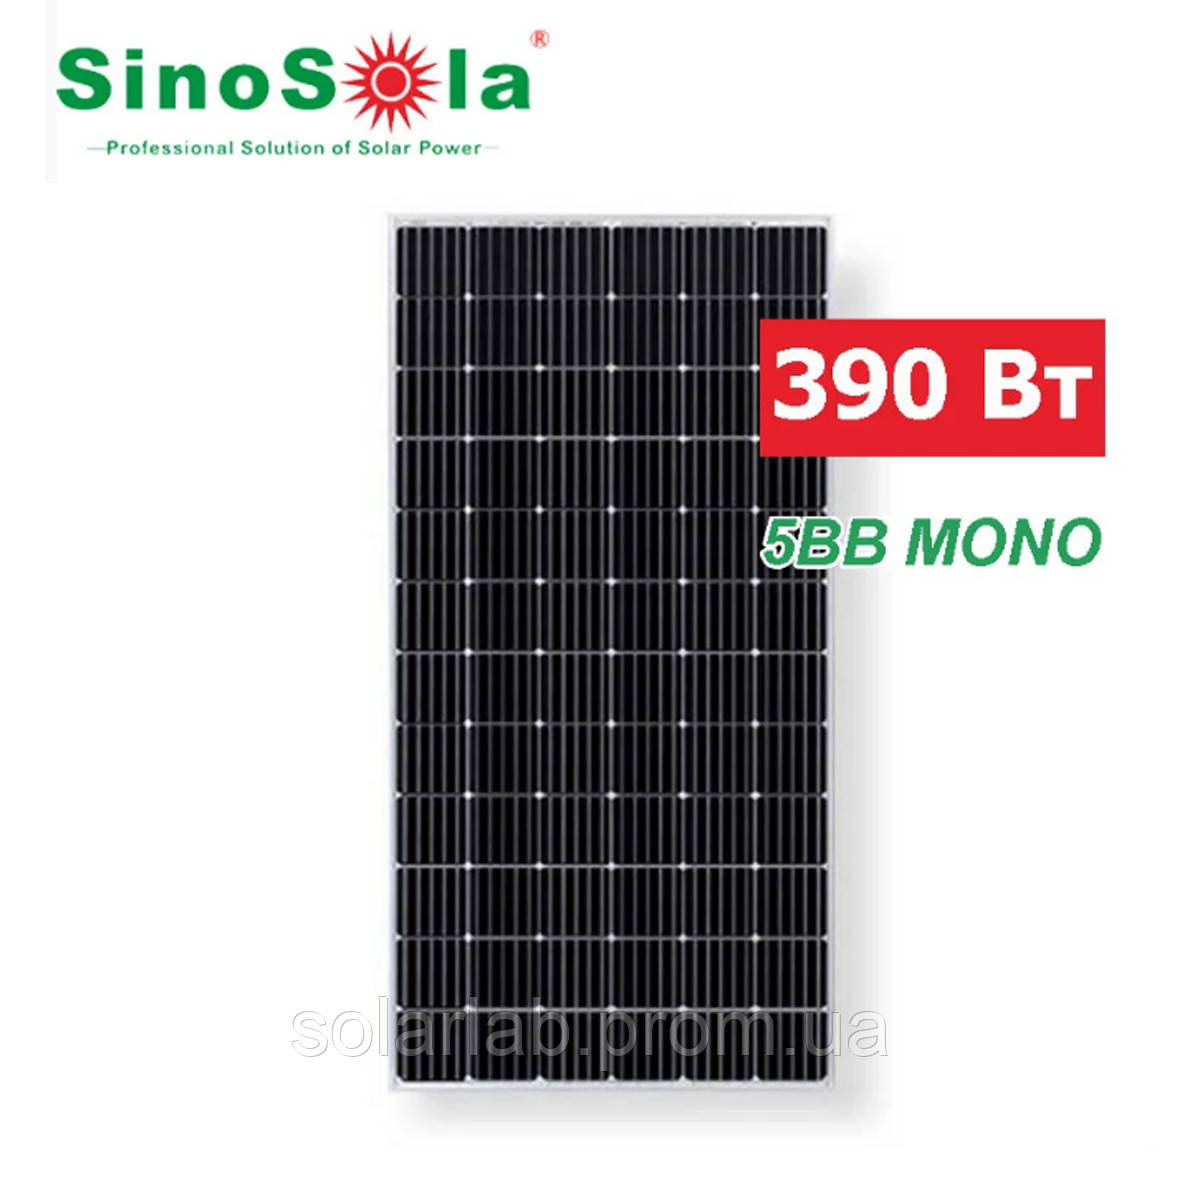 Сонячна батарея Sinosola 390 MONO — 72 cells